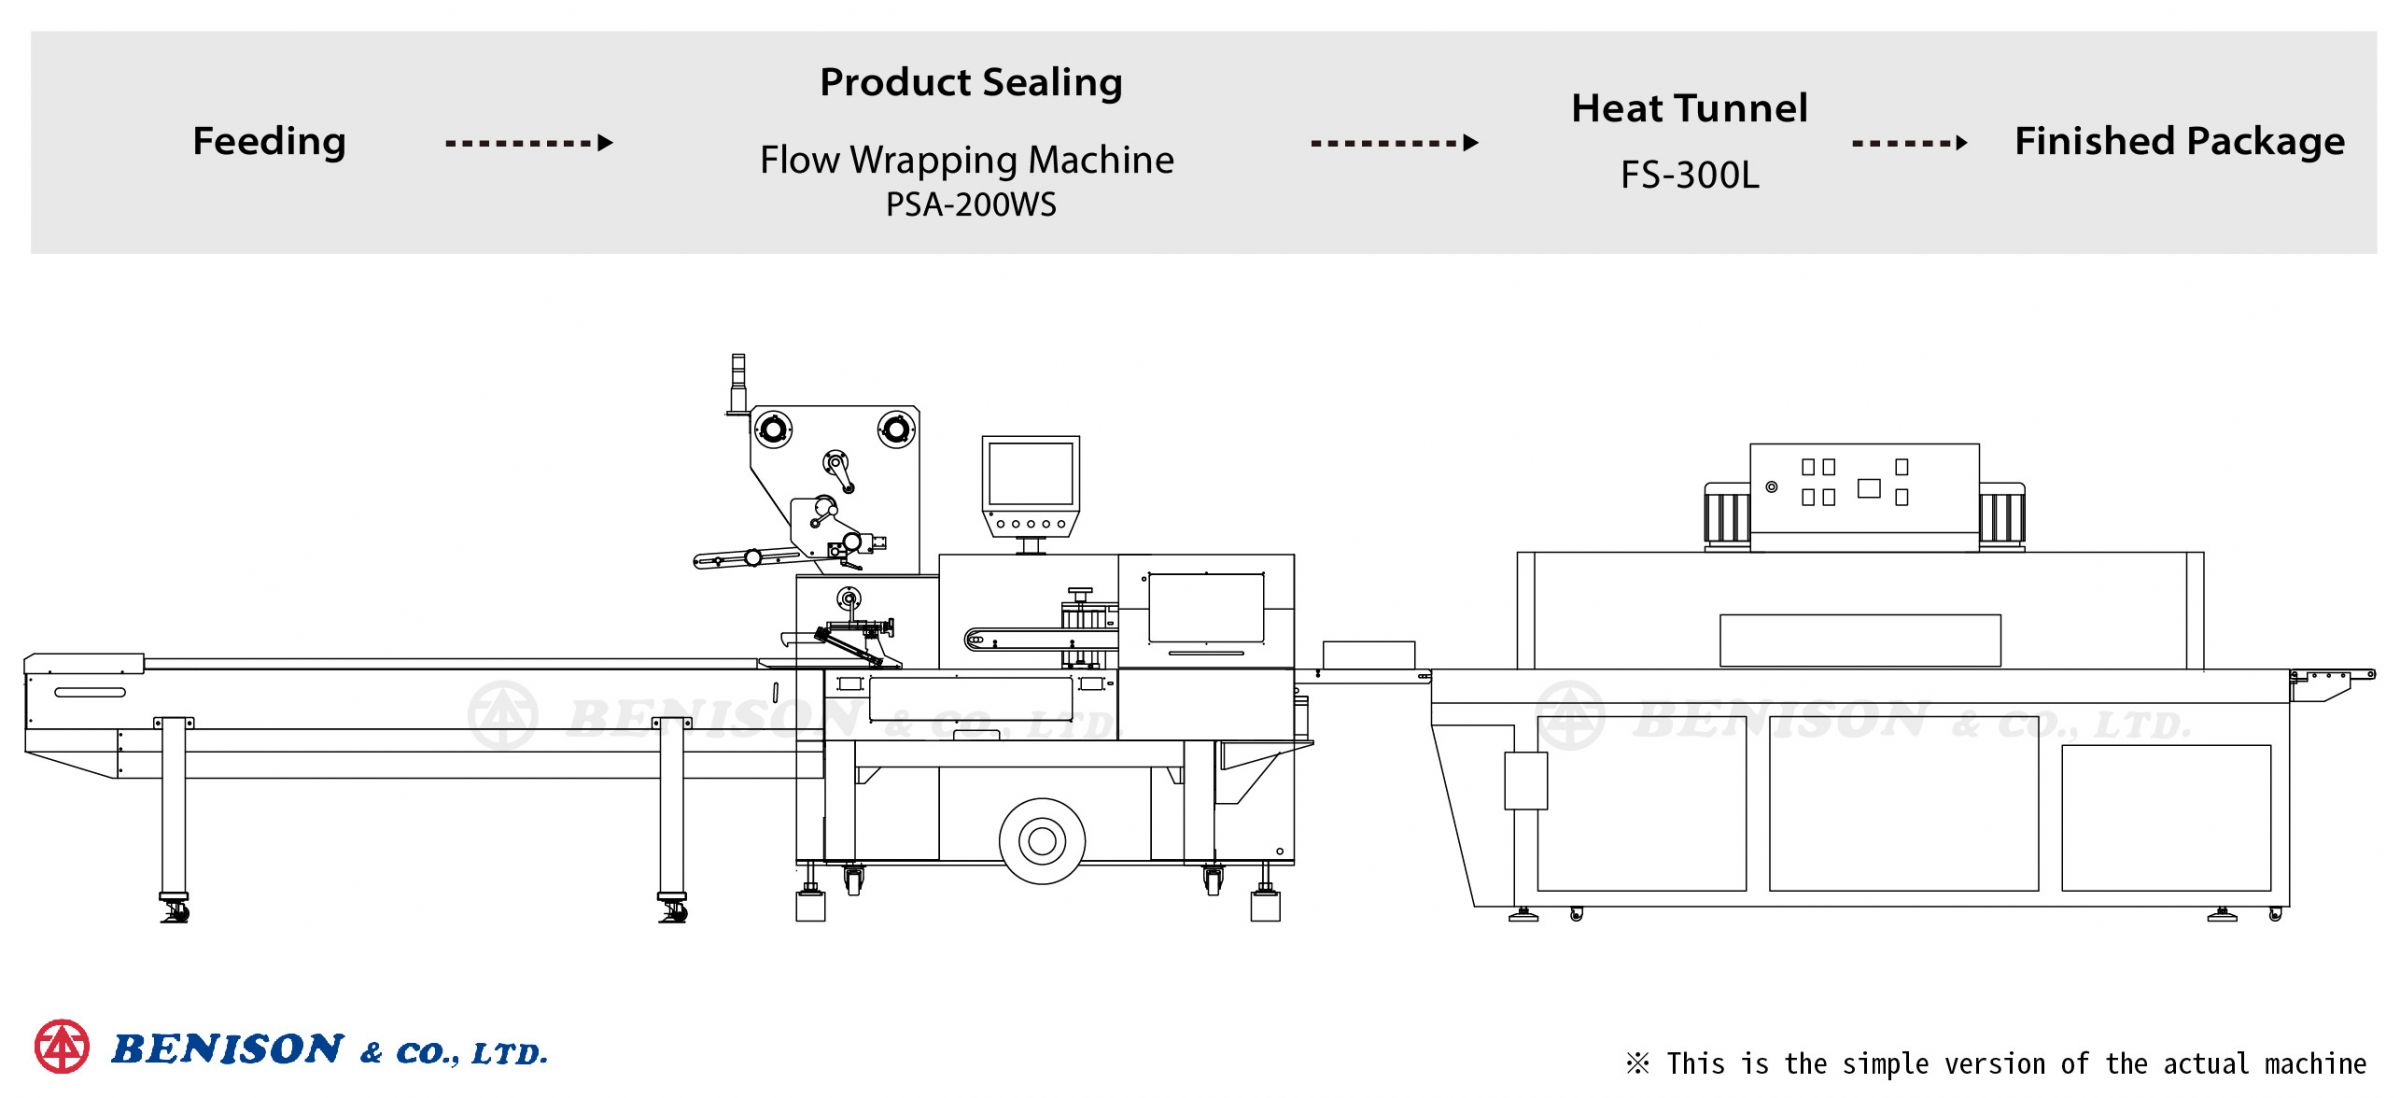 Máquina Envolvente de Flujo PSA-200WS + Túnel de Calor FS-300L para Soluciones de Productos de Cubierta de Enchufe